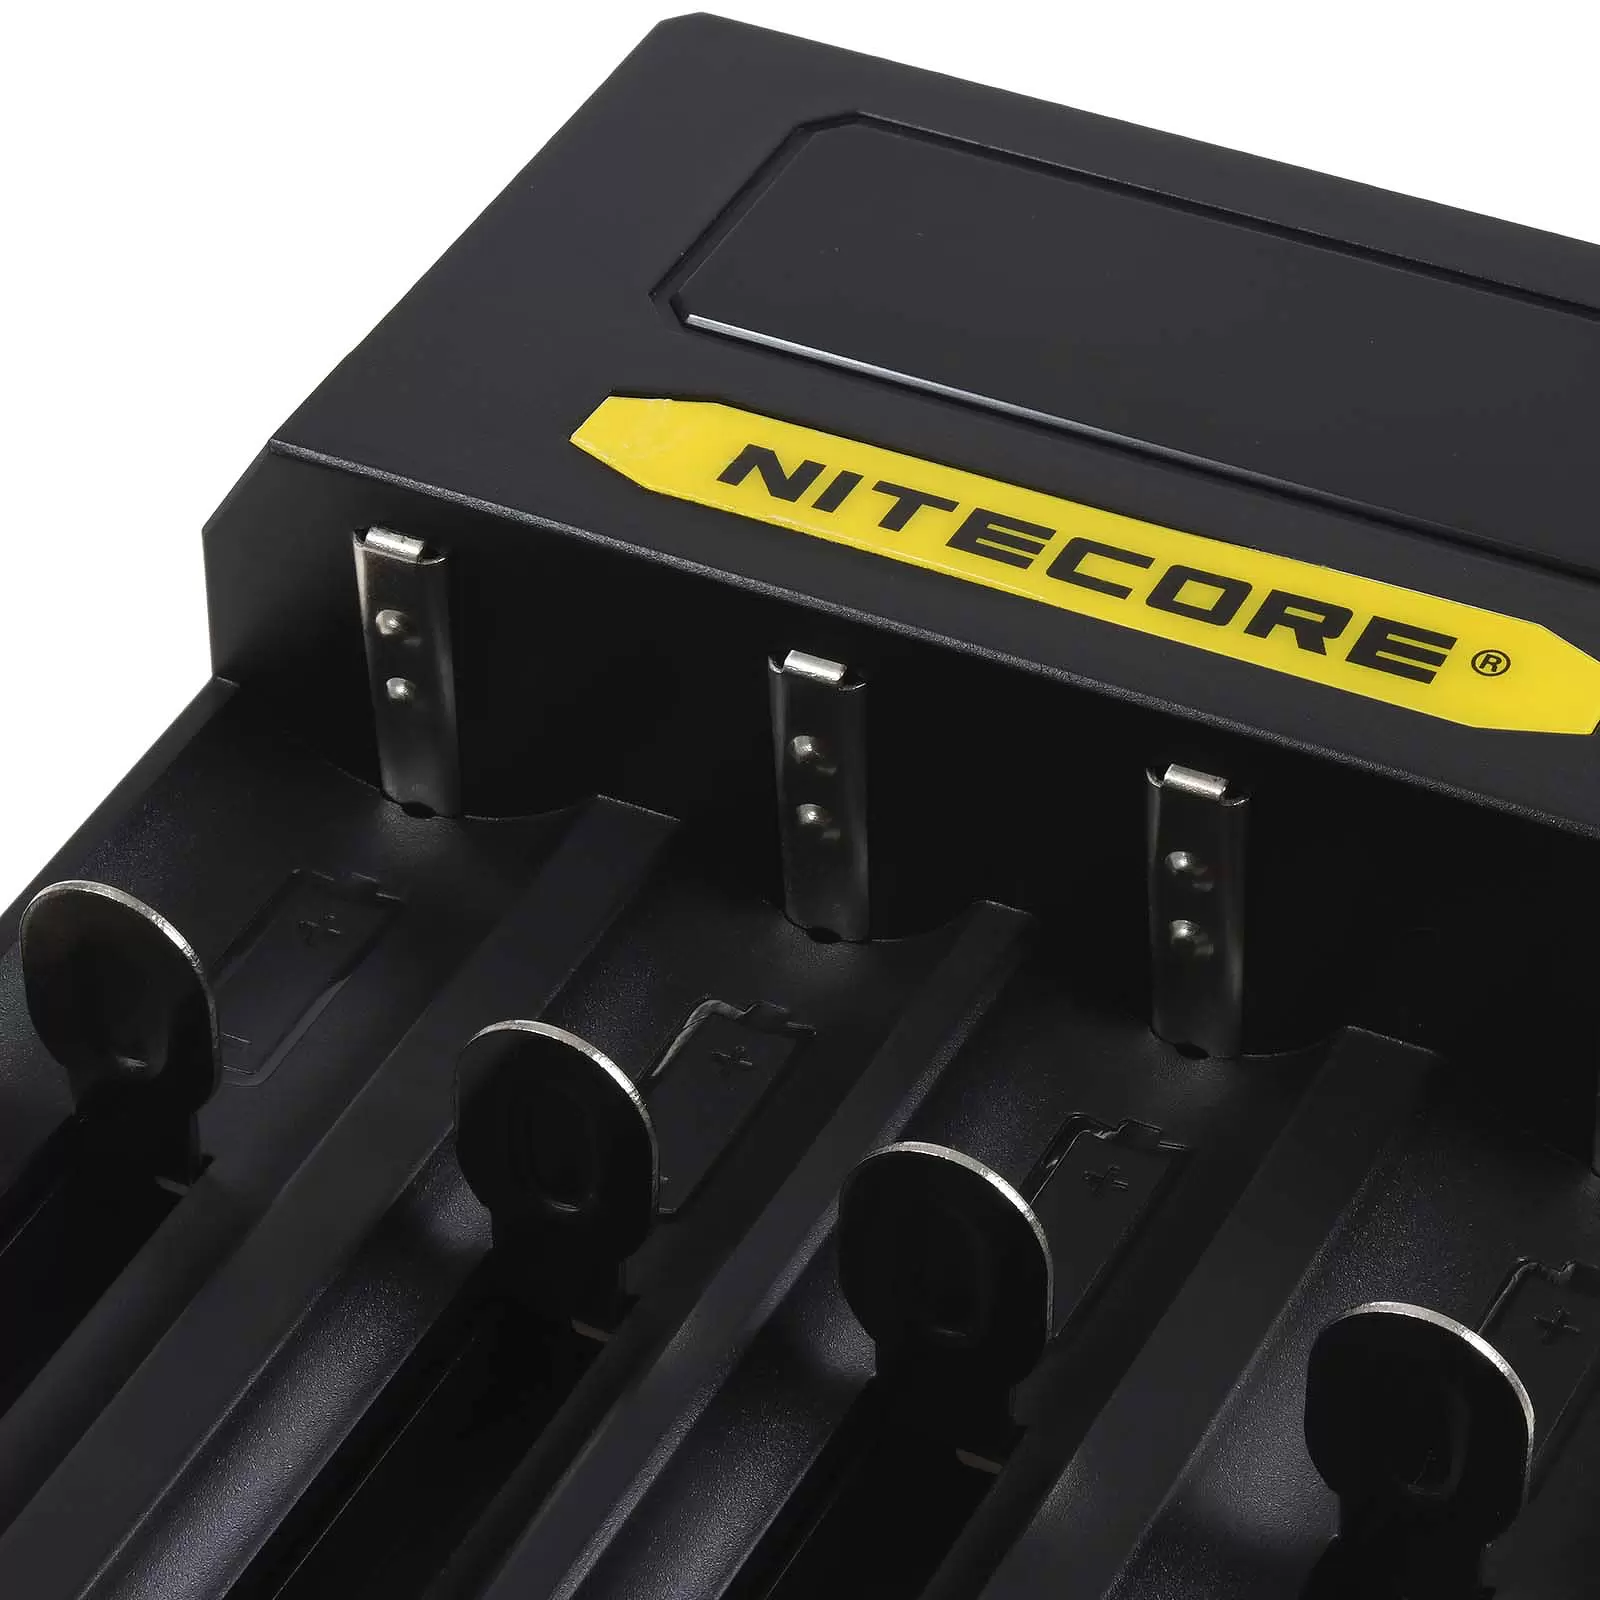 Nitecore USB-C CI4 Ladegerät mit 4 Ladeschächten für Li-Ion-, NiMH- und NiCd Akkus